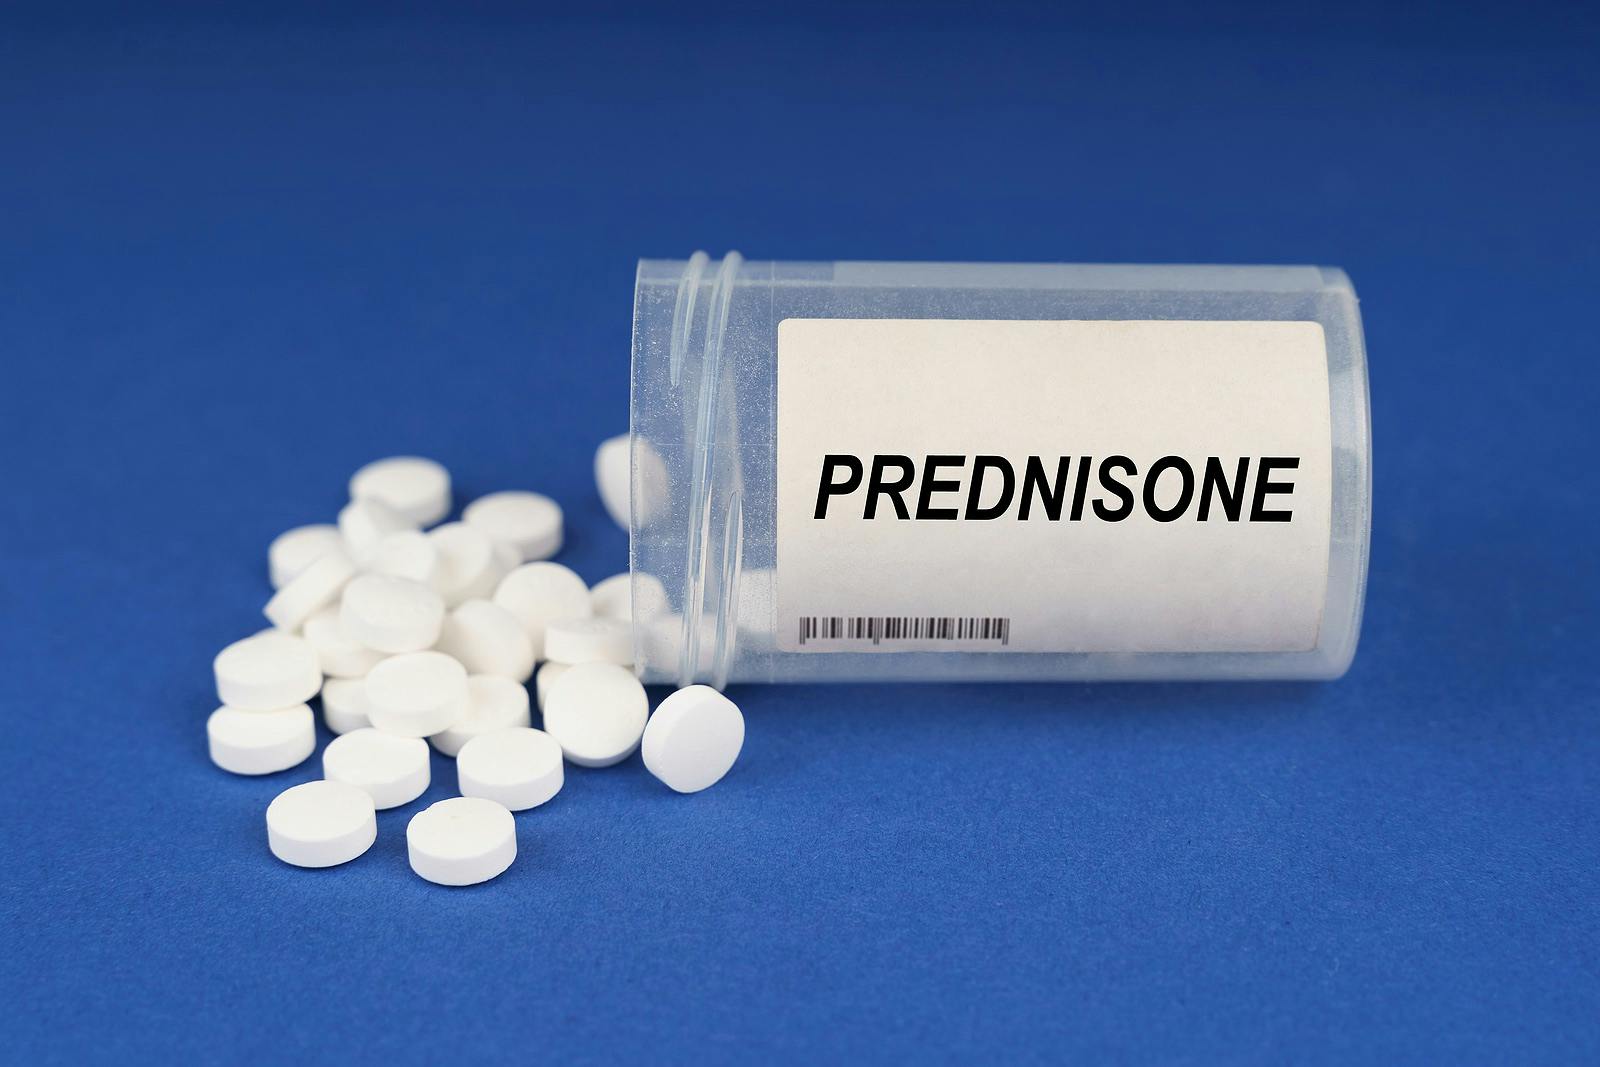 A bottle of pills labeled prednisone